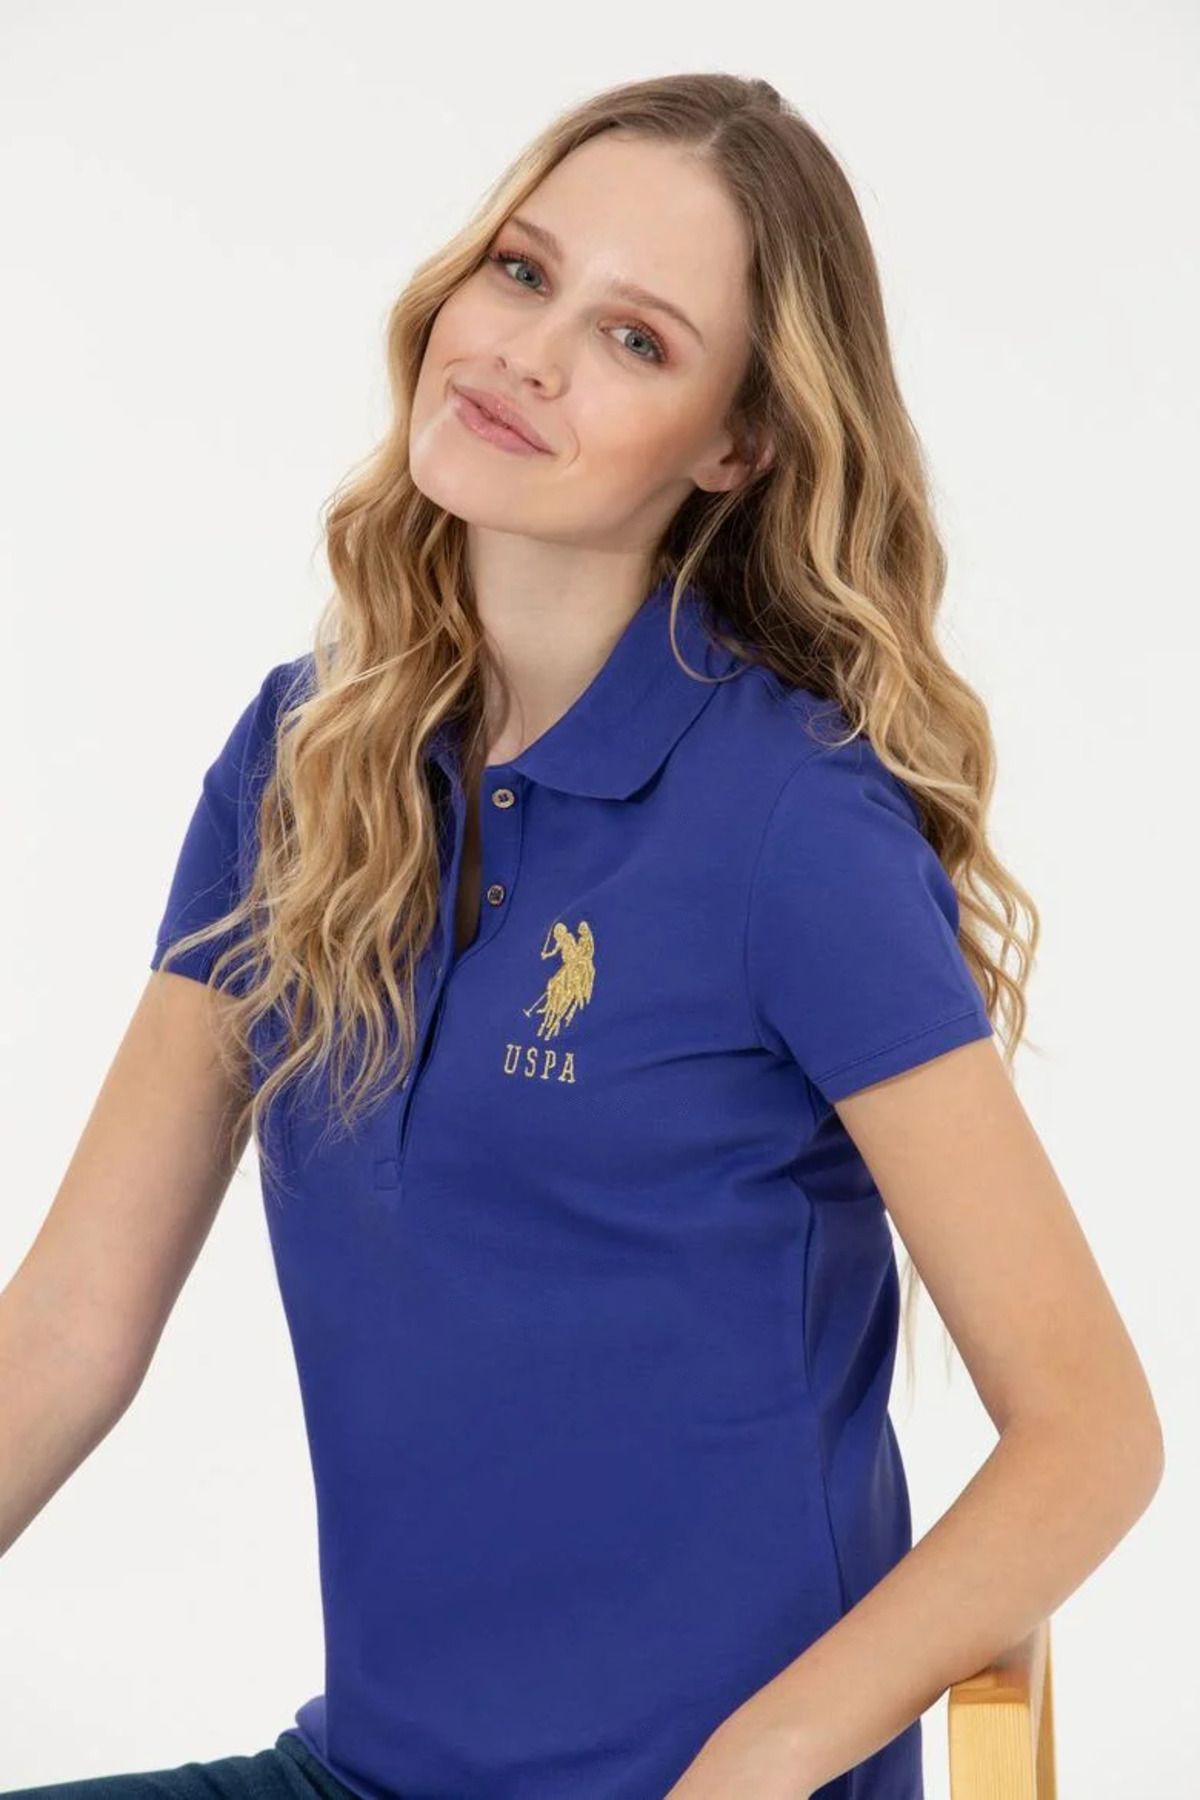 U.S. Polo Assn. Kadın Mavi T-shirt